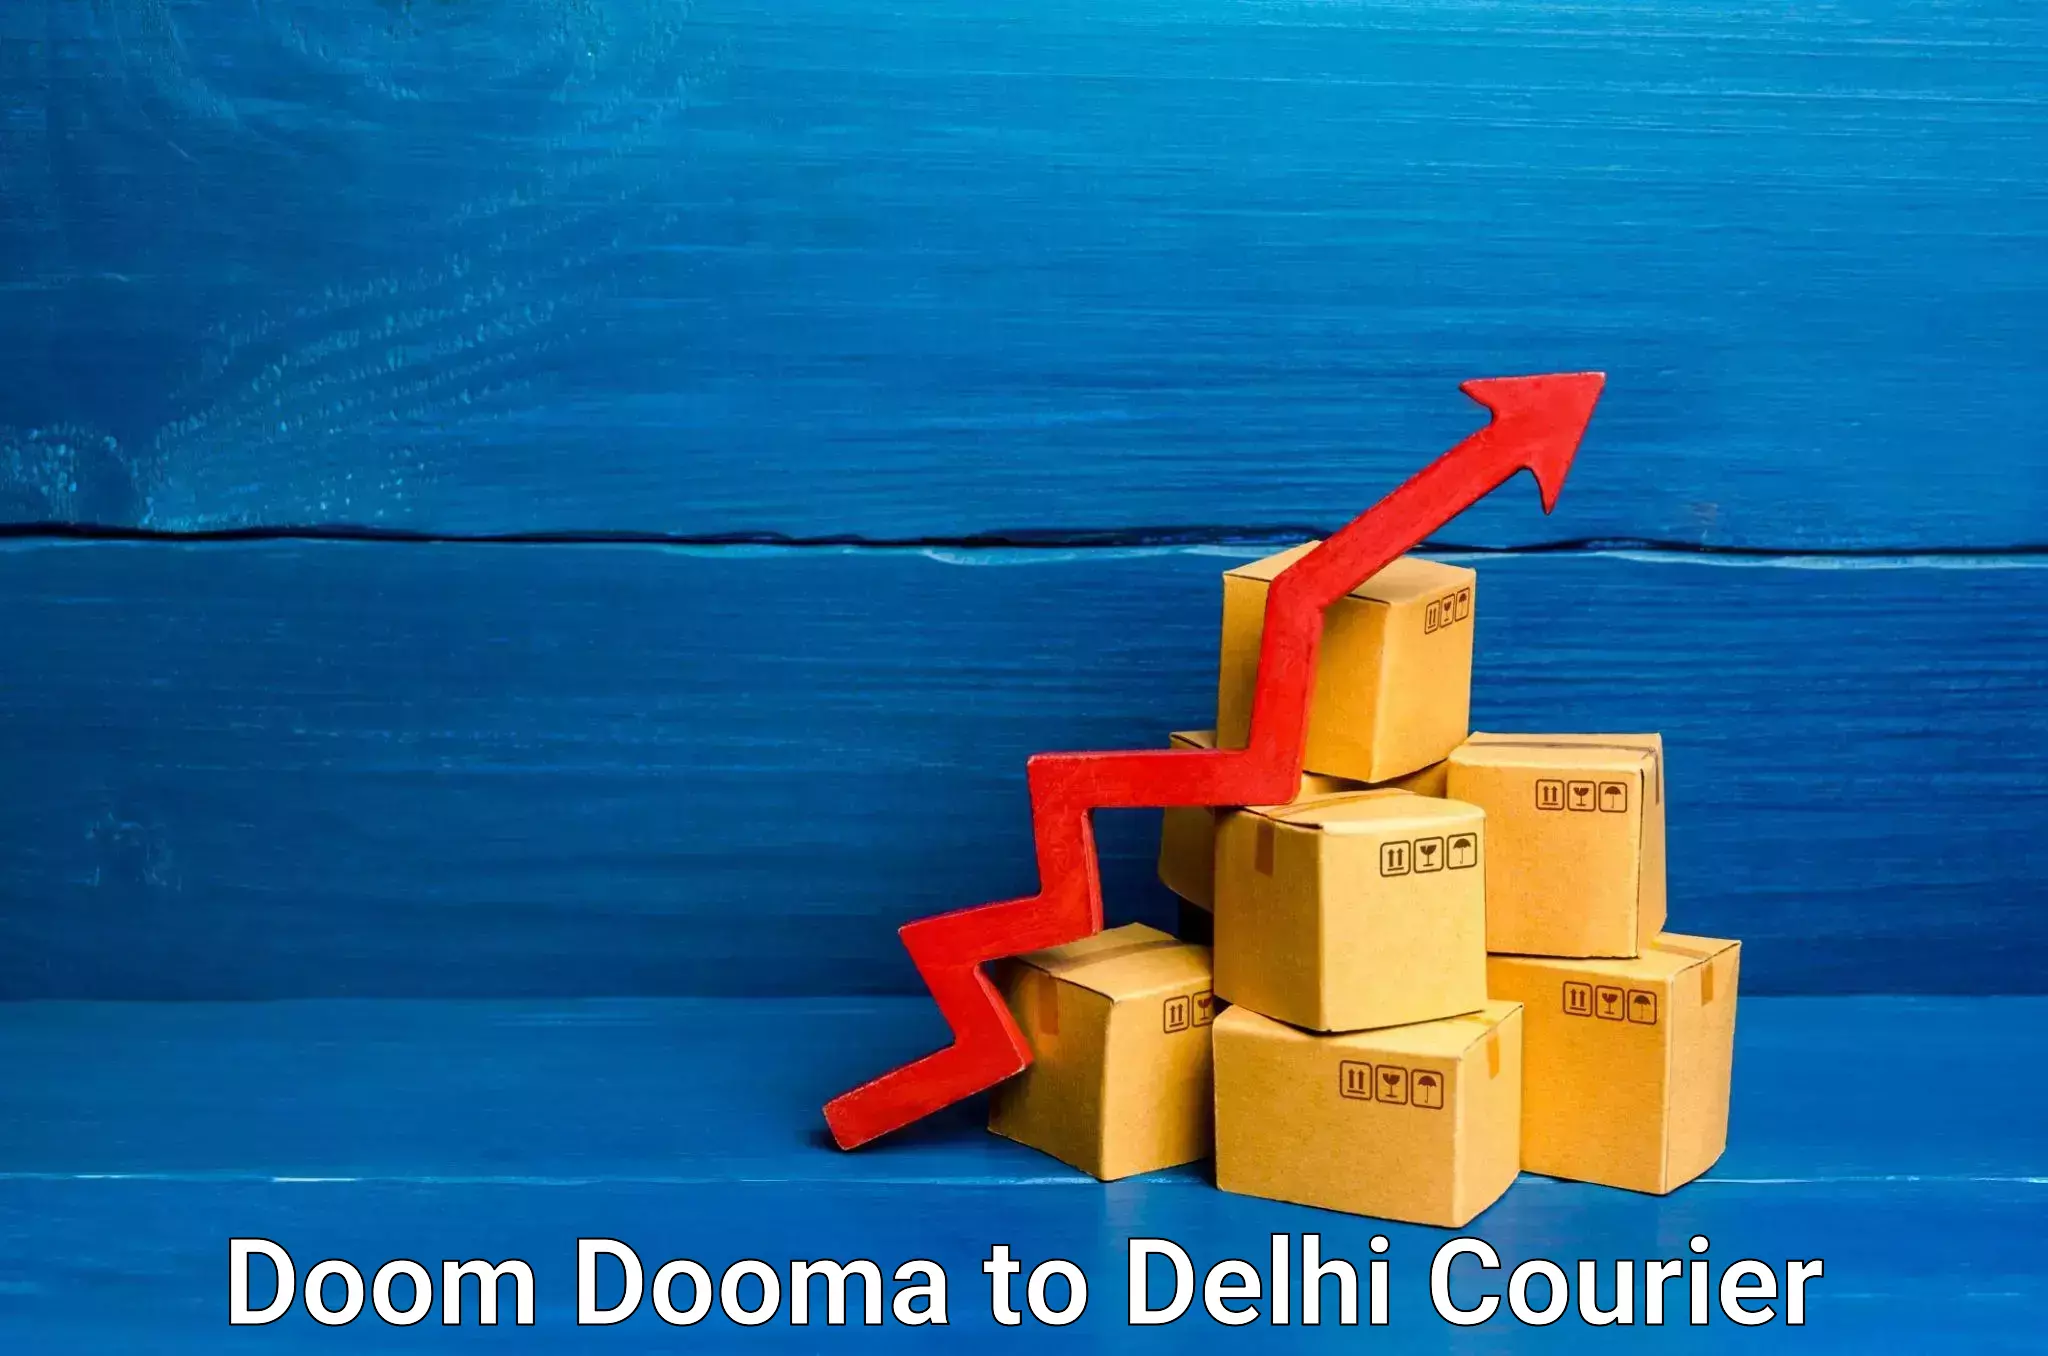 High-speed delivery Doom Dooma to IIT Delhi